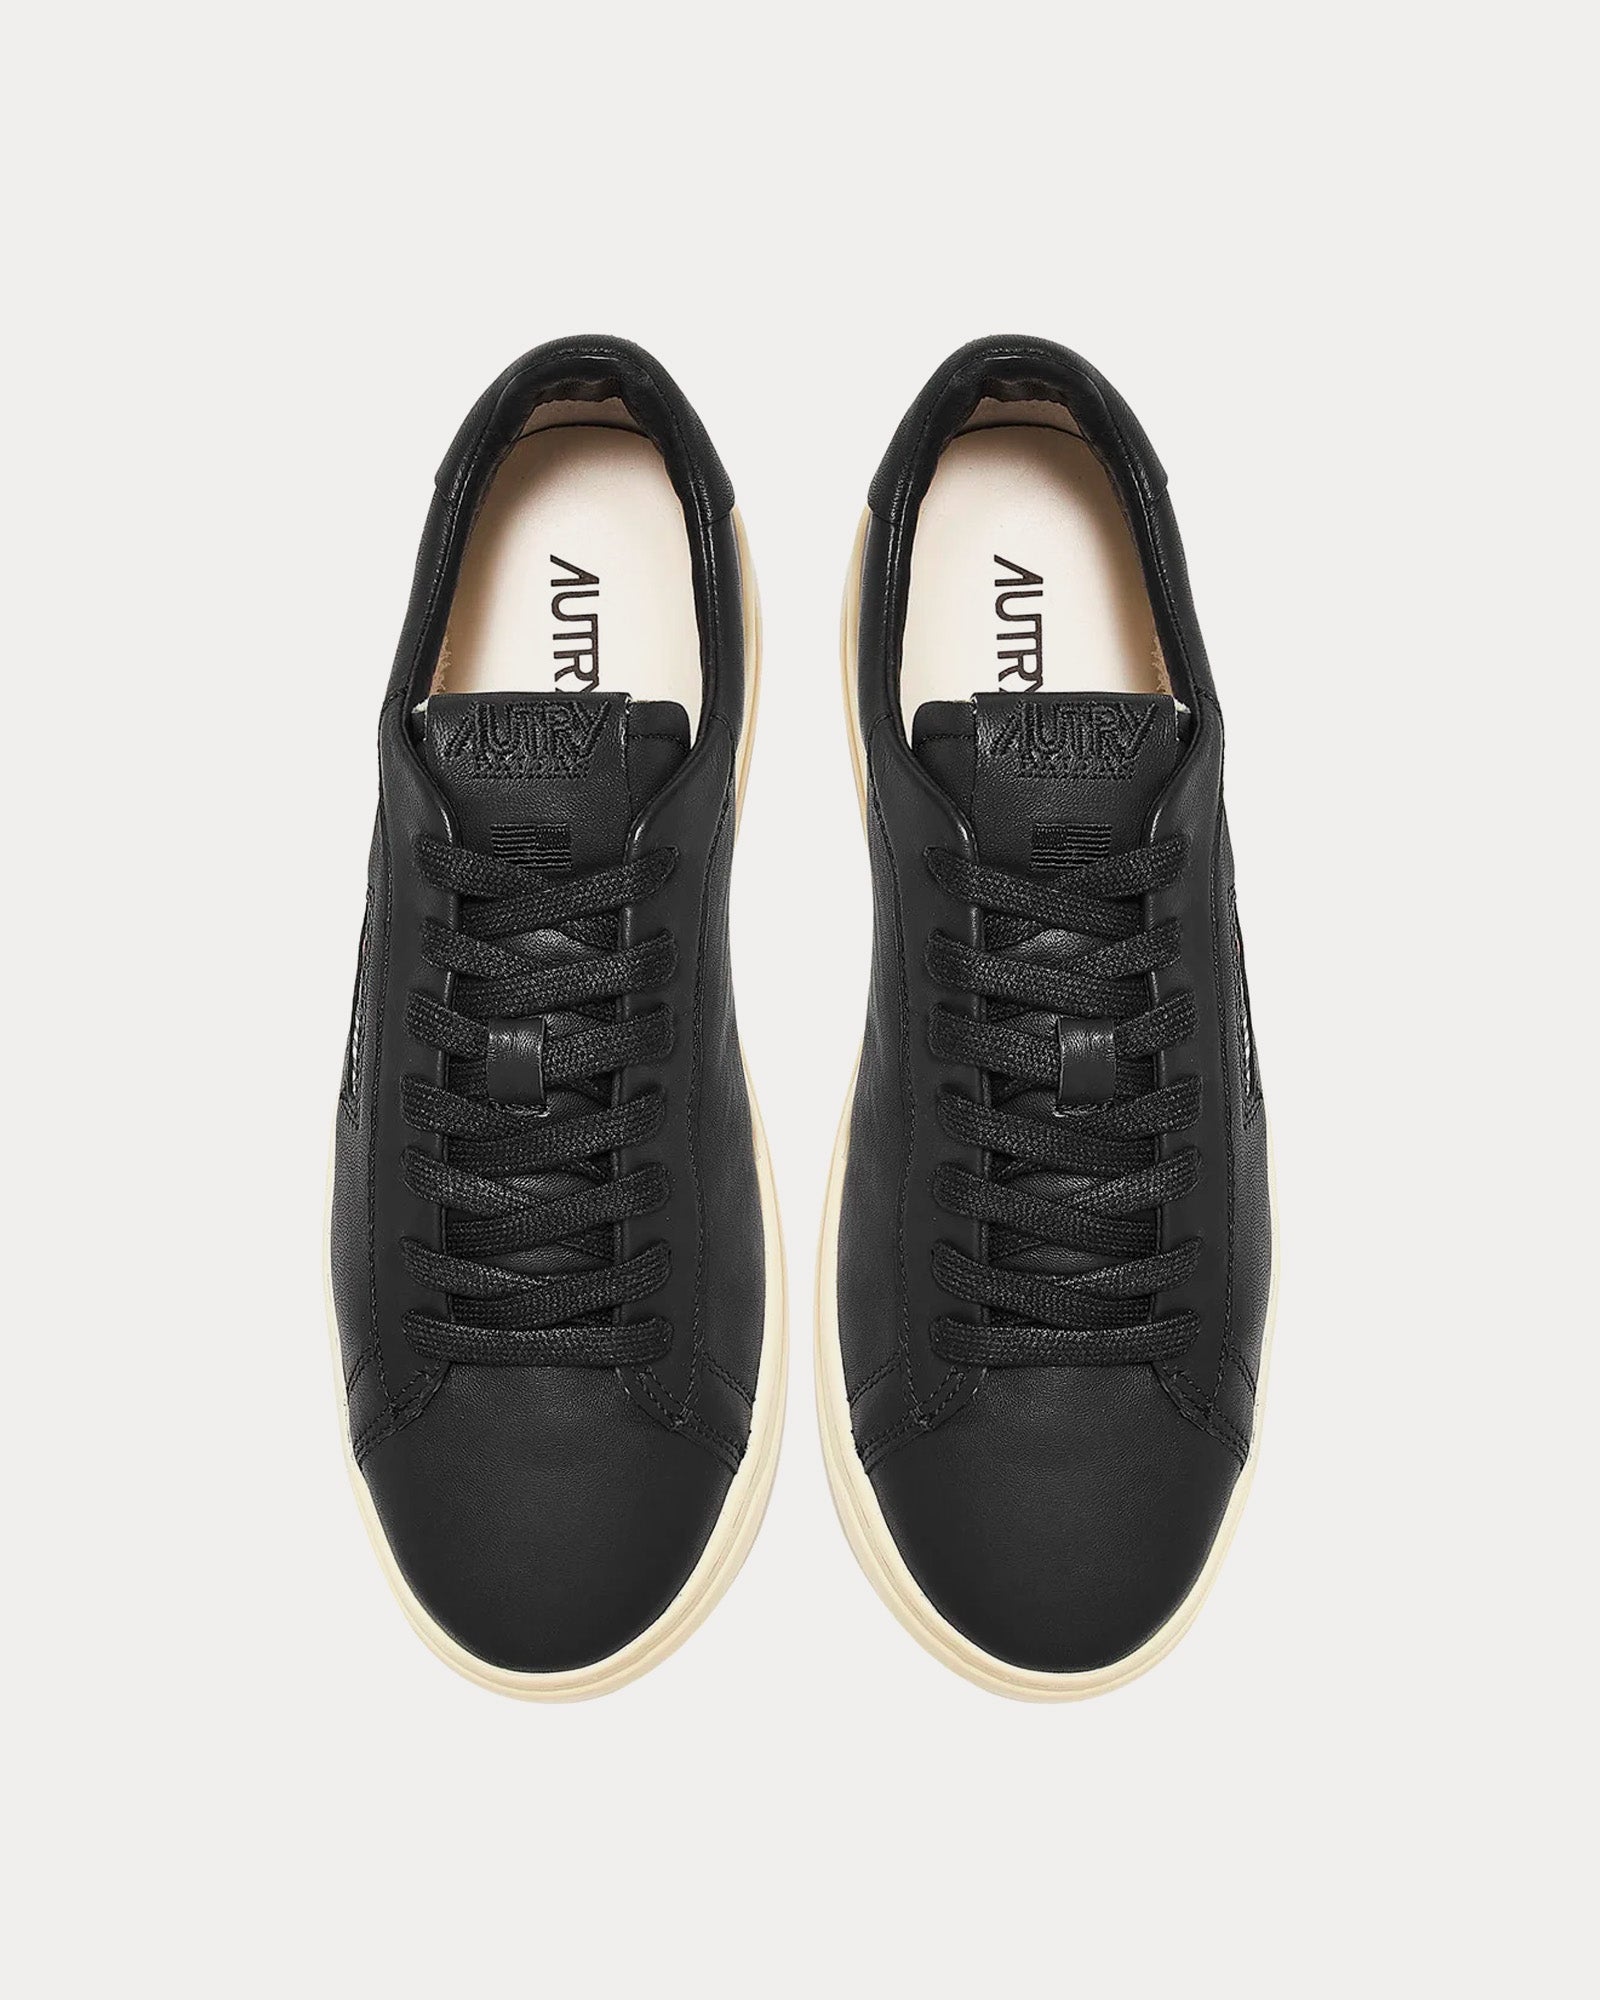 Autry - Dallas Goatskin Black Low Top Sneakers